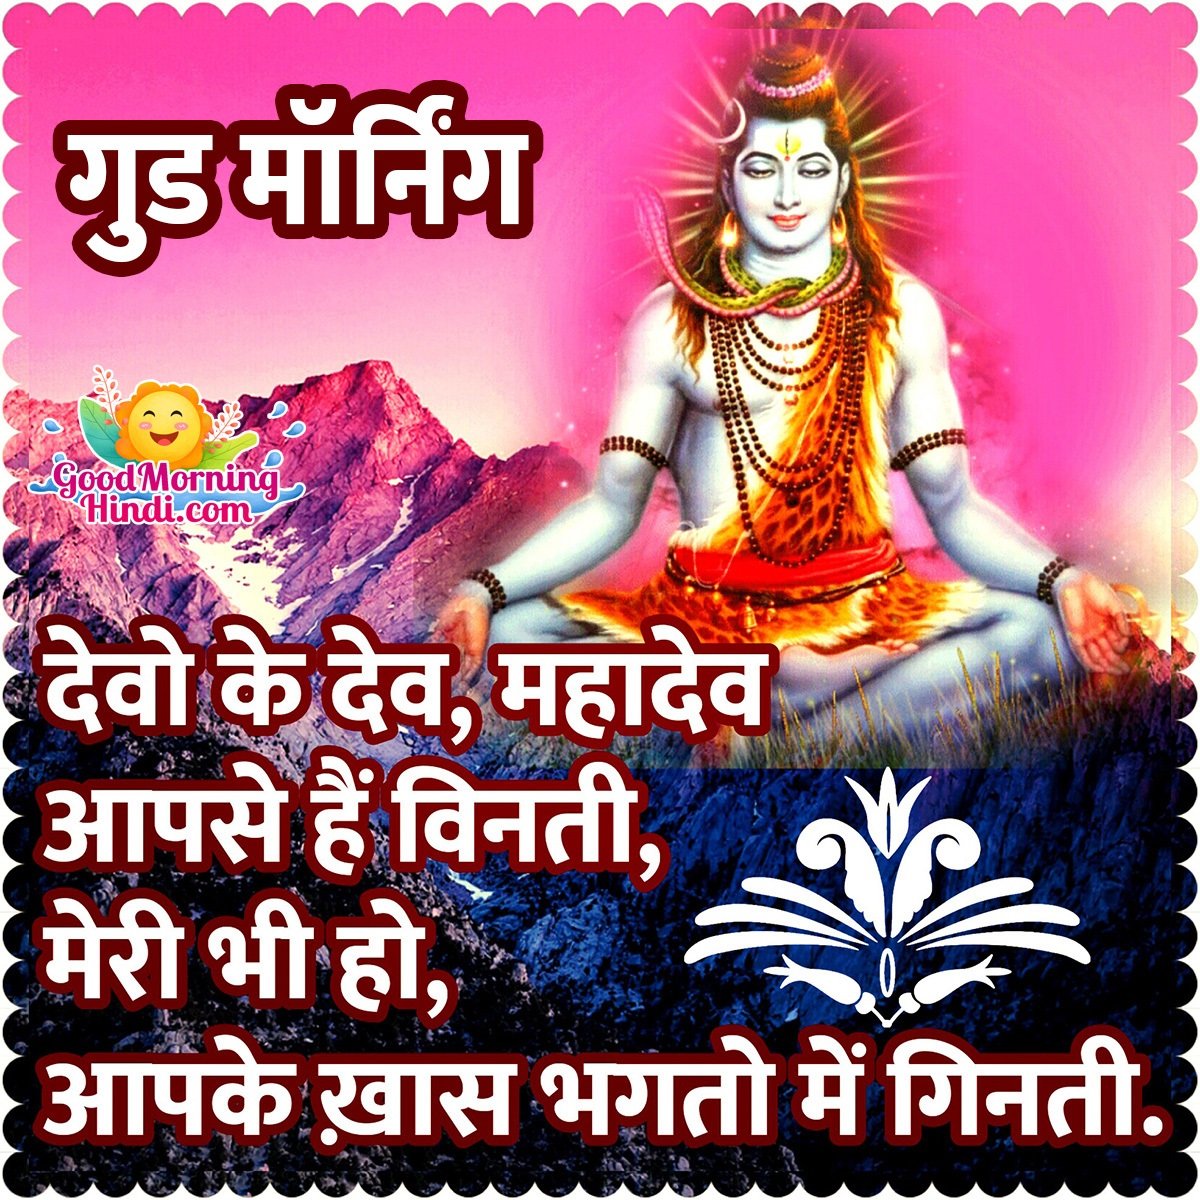 Good Morning Shiva Hindi Quote